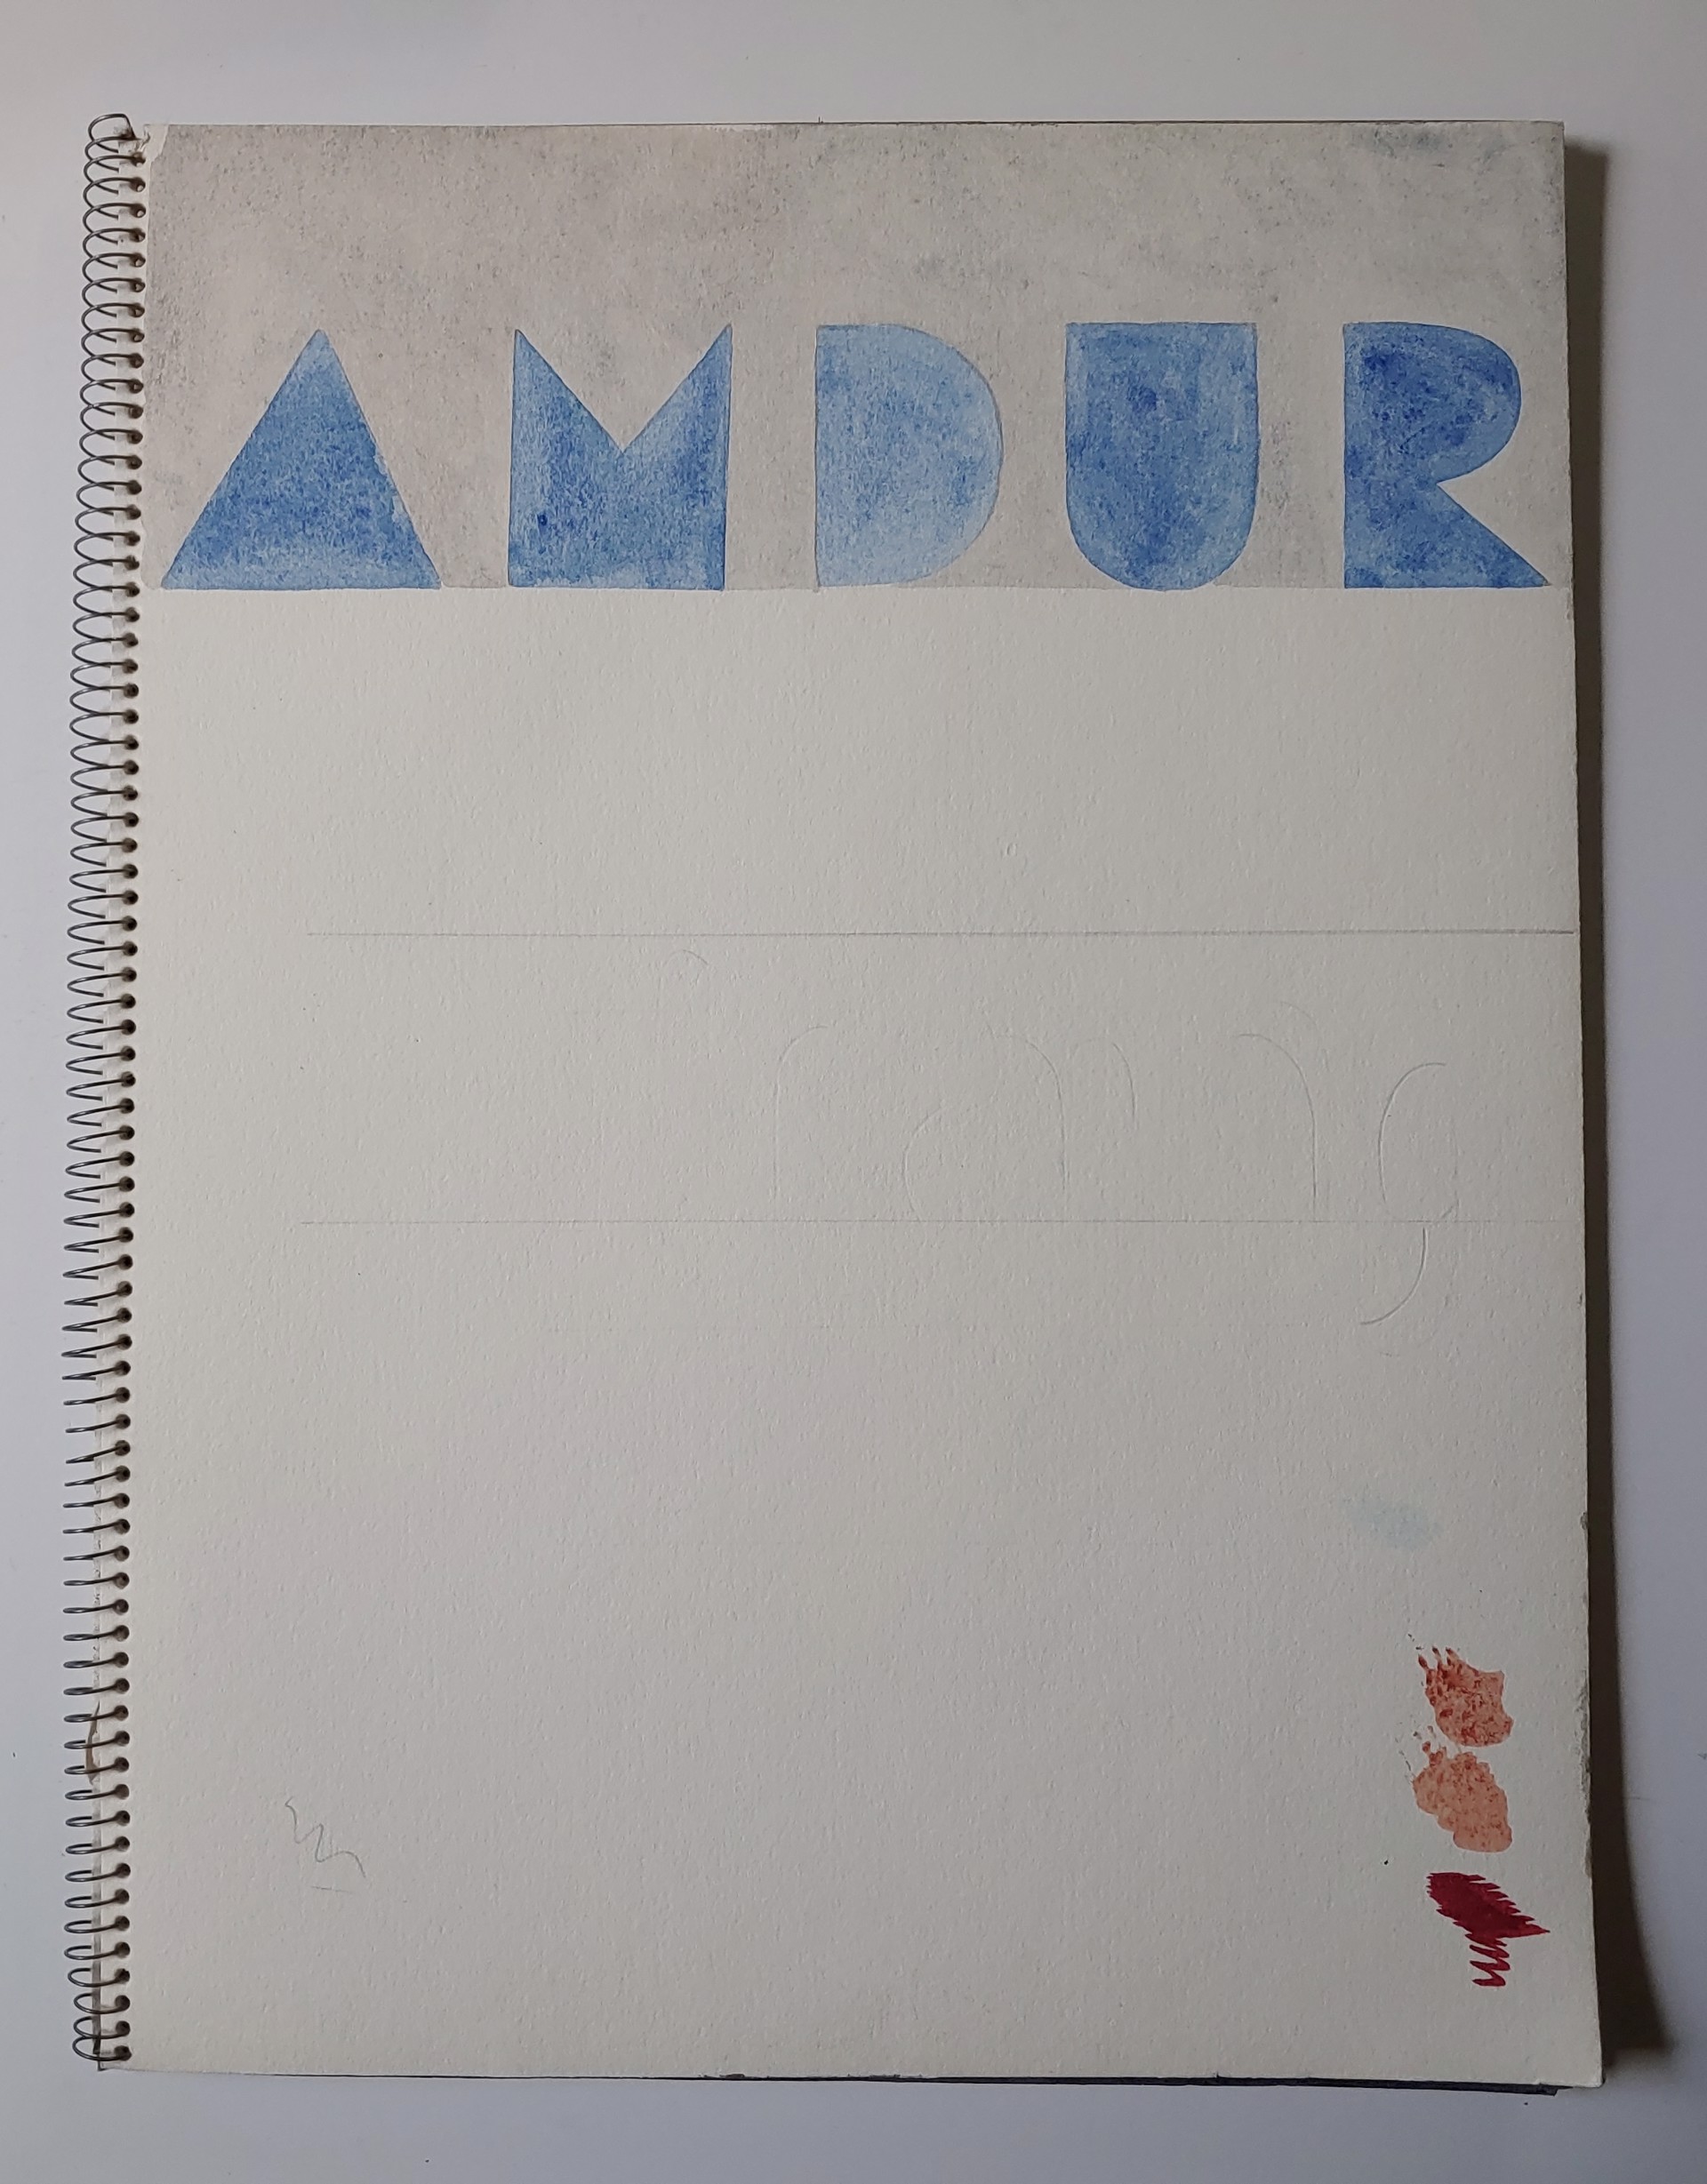 1980 Sketchbook by David Amdur